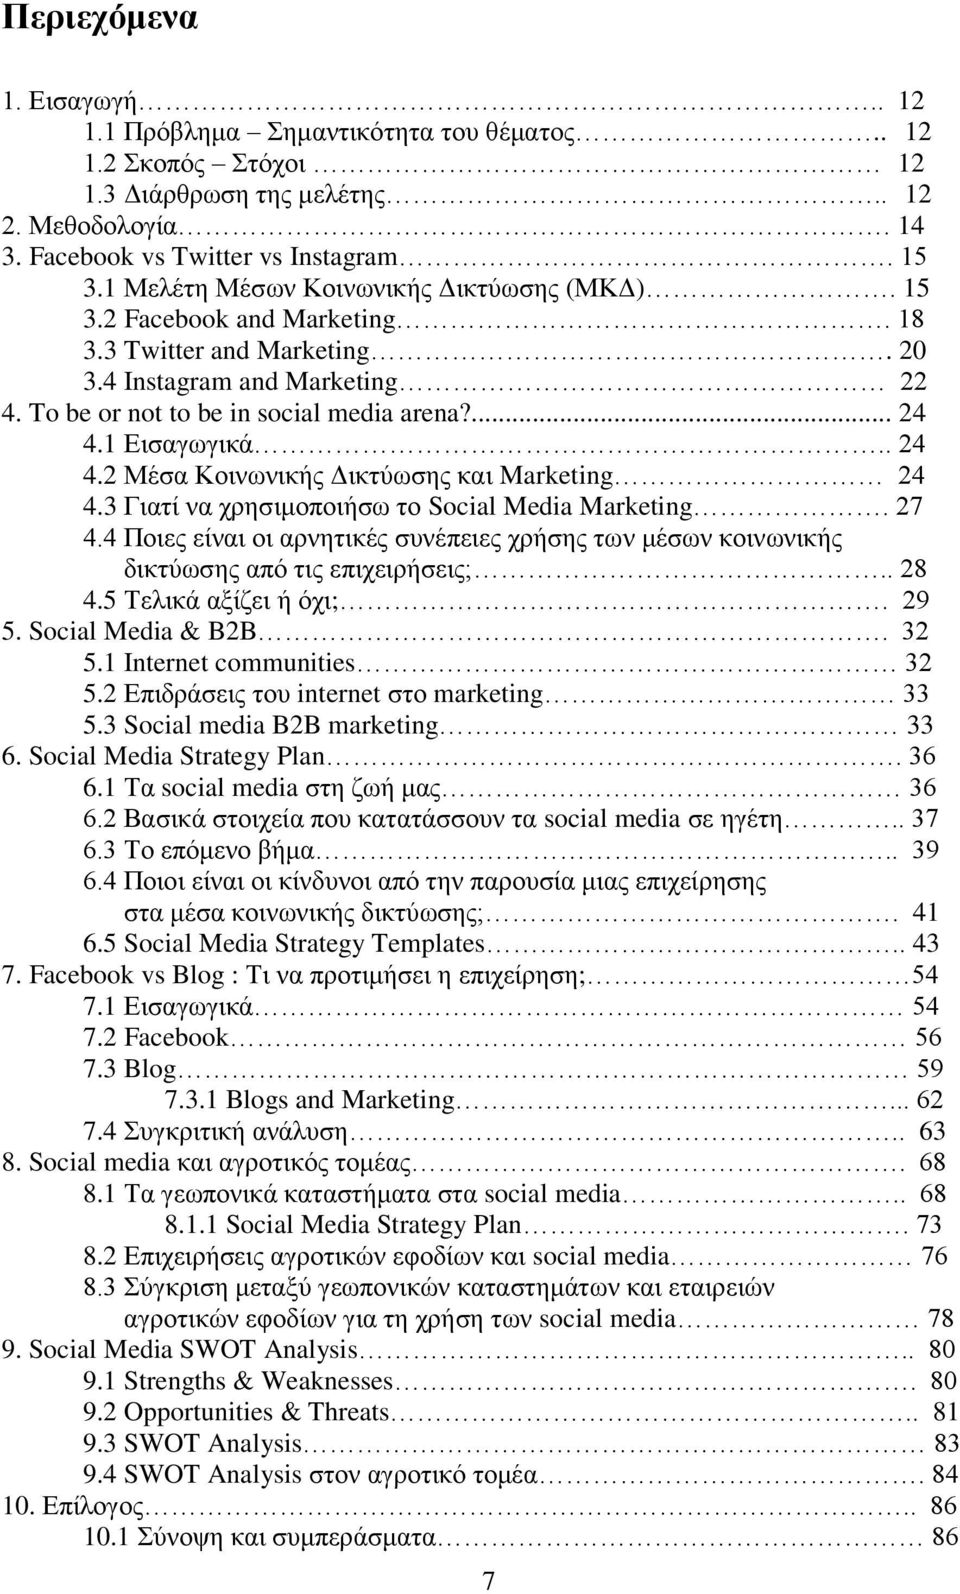 1 Εισαγωγικά.. 24 4.2 Μέσα Κοινωνικής Δικτύωσης και Marketing 24 4.3 Γιατί να χρησιμοποιήσω το Social Media Marketing. 27 4.